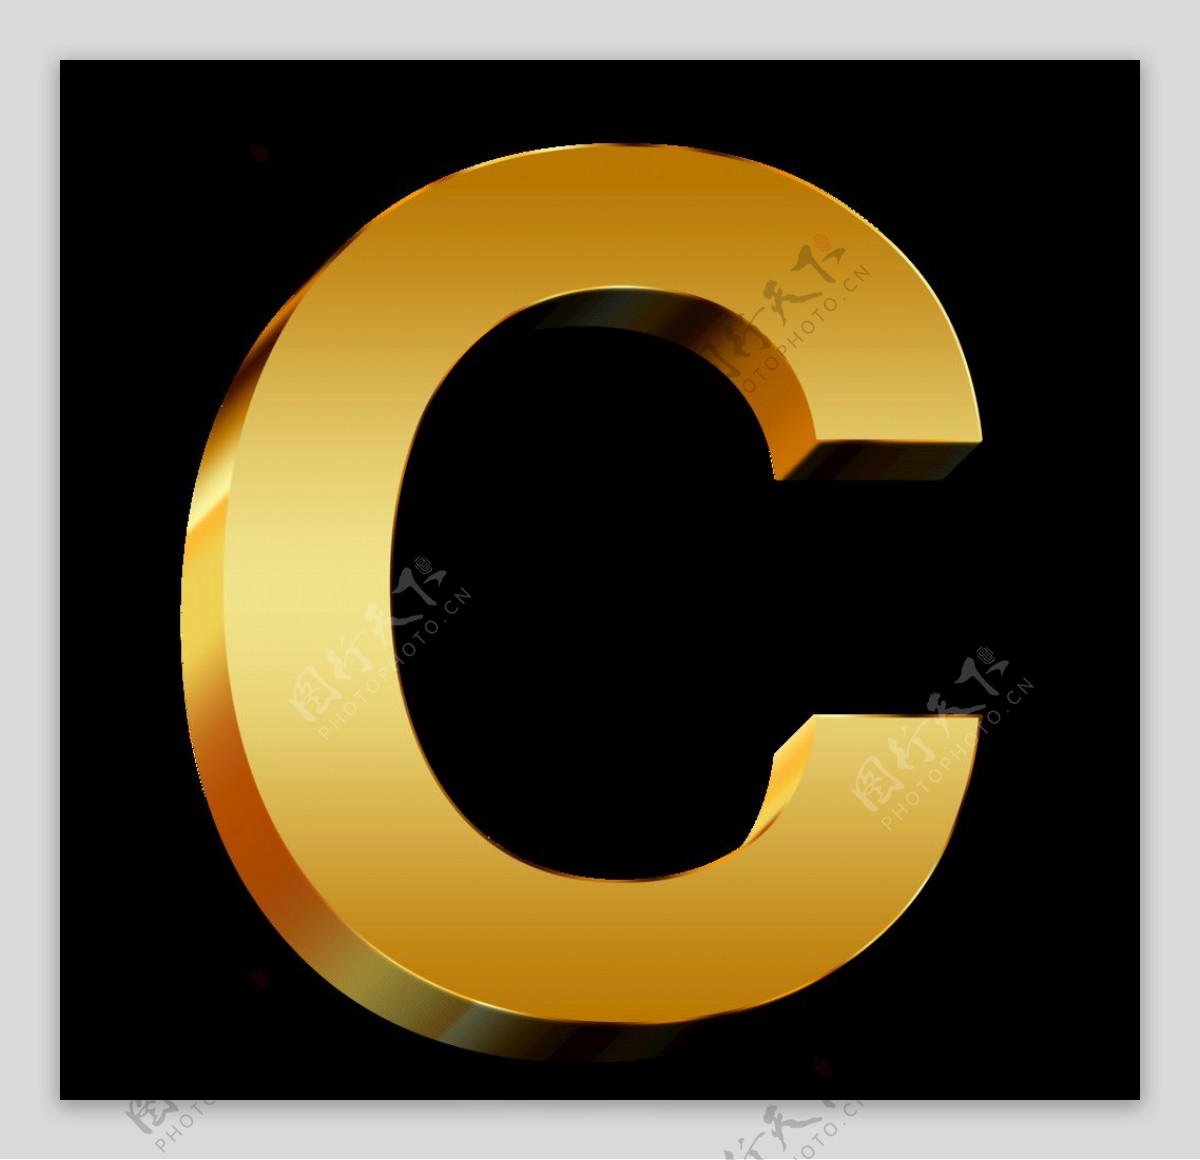 字母C图片